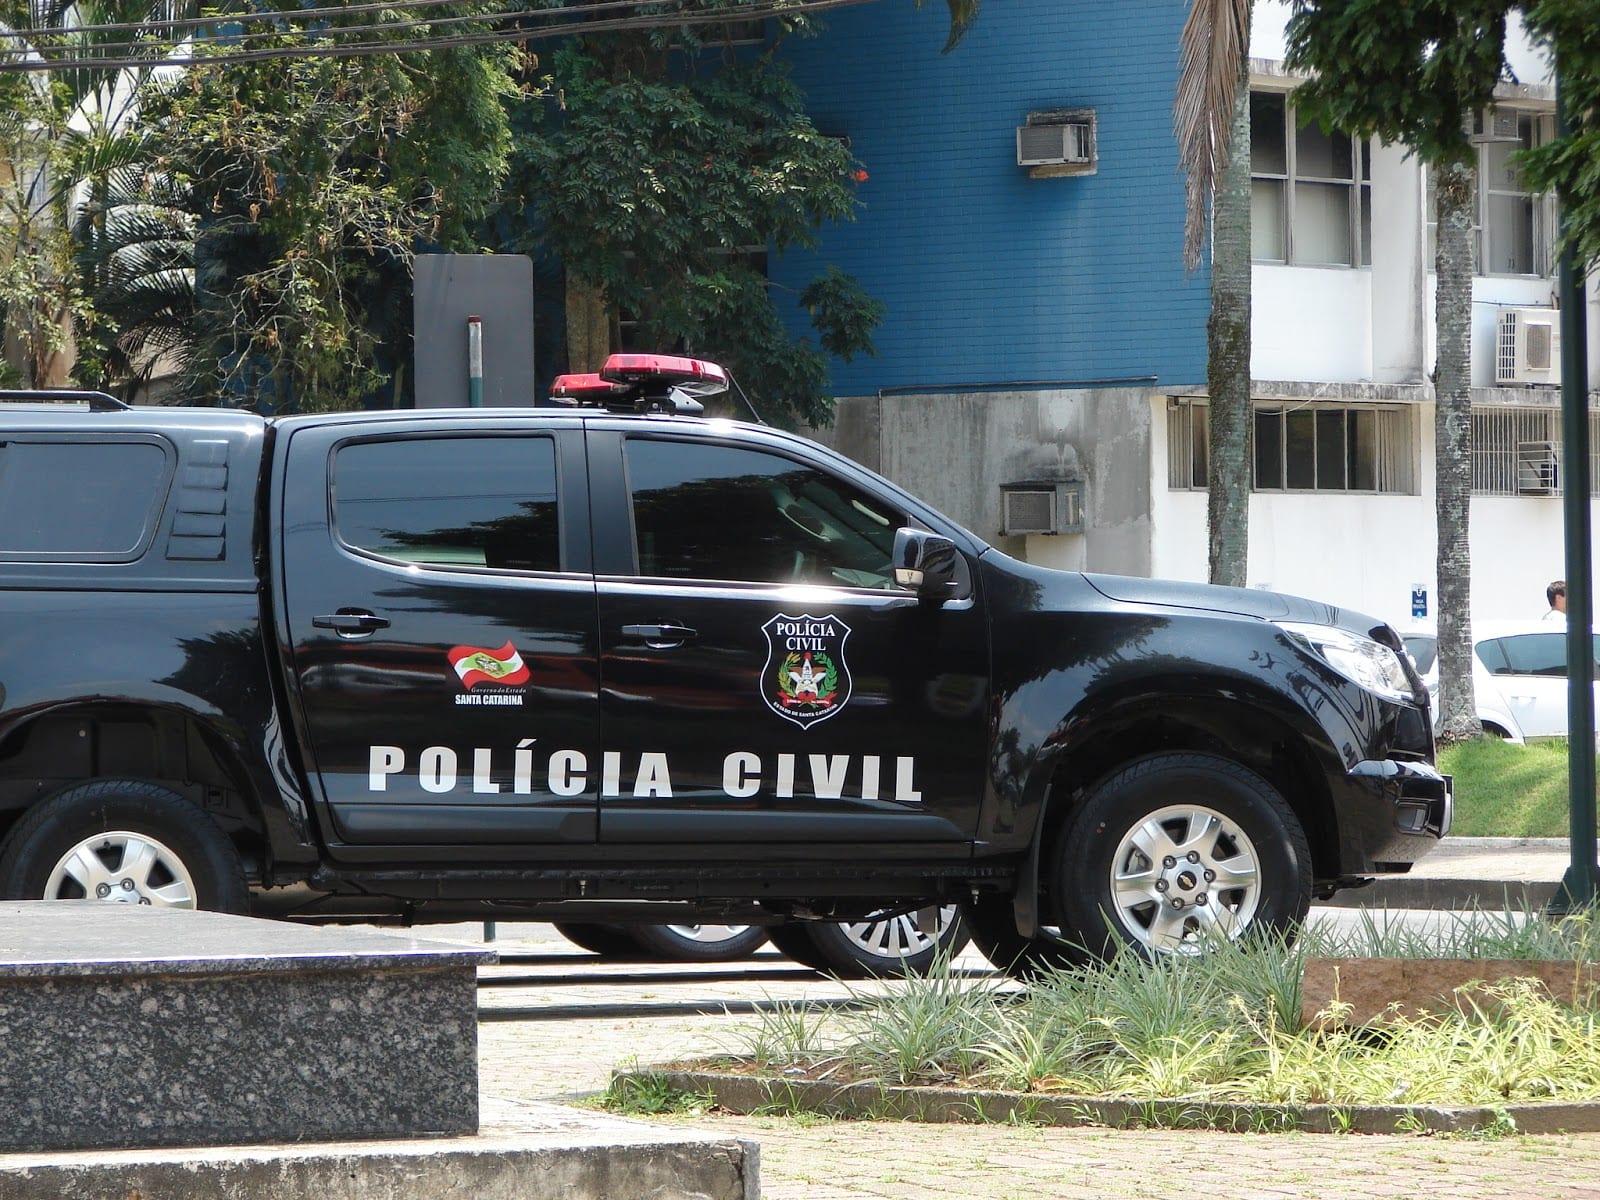 Viatura da Polícia Civil de Santa Catarina - foto de Jaime Batista